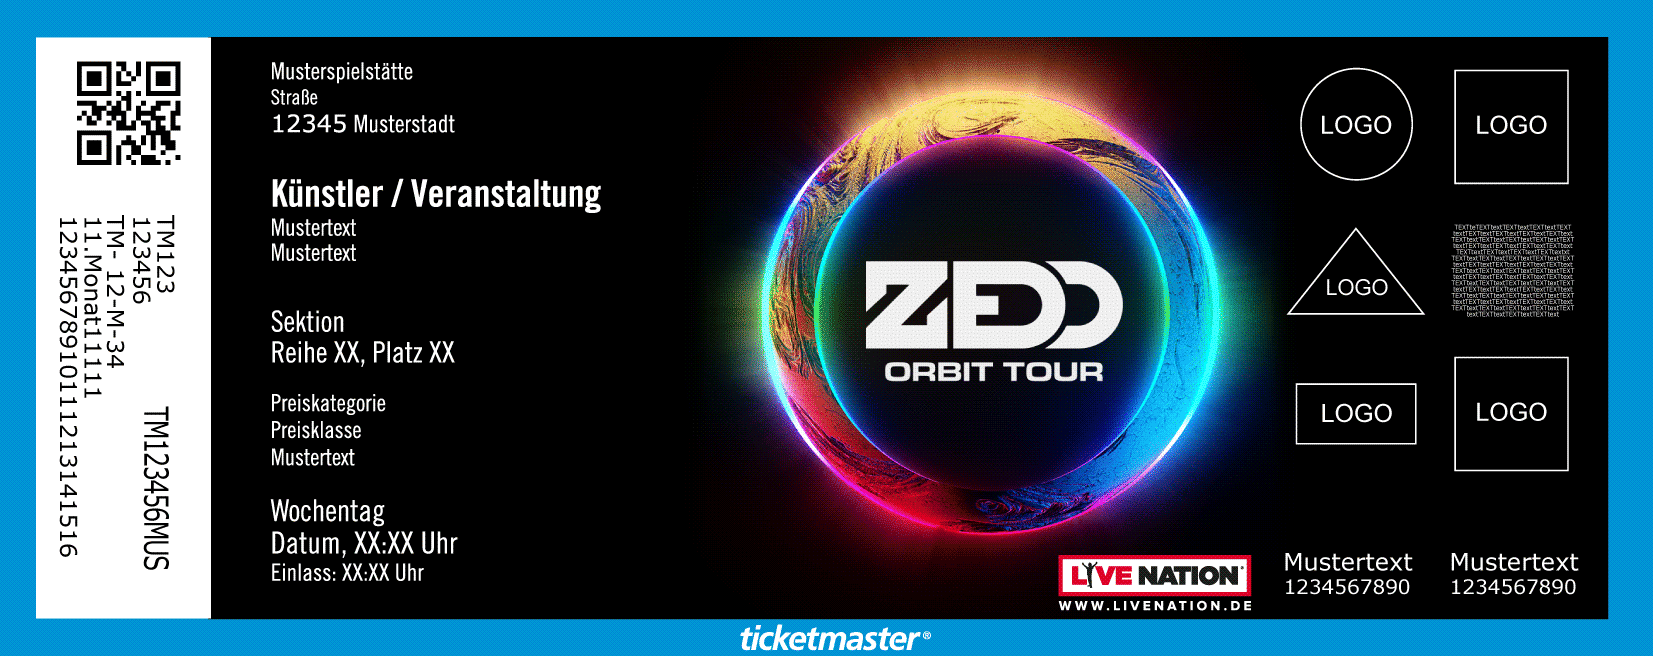 Zedd Auf Orbit Tour 19 Live In Deutschland Ticketmaster De Blog